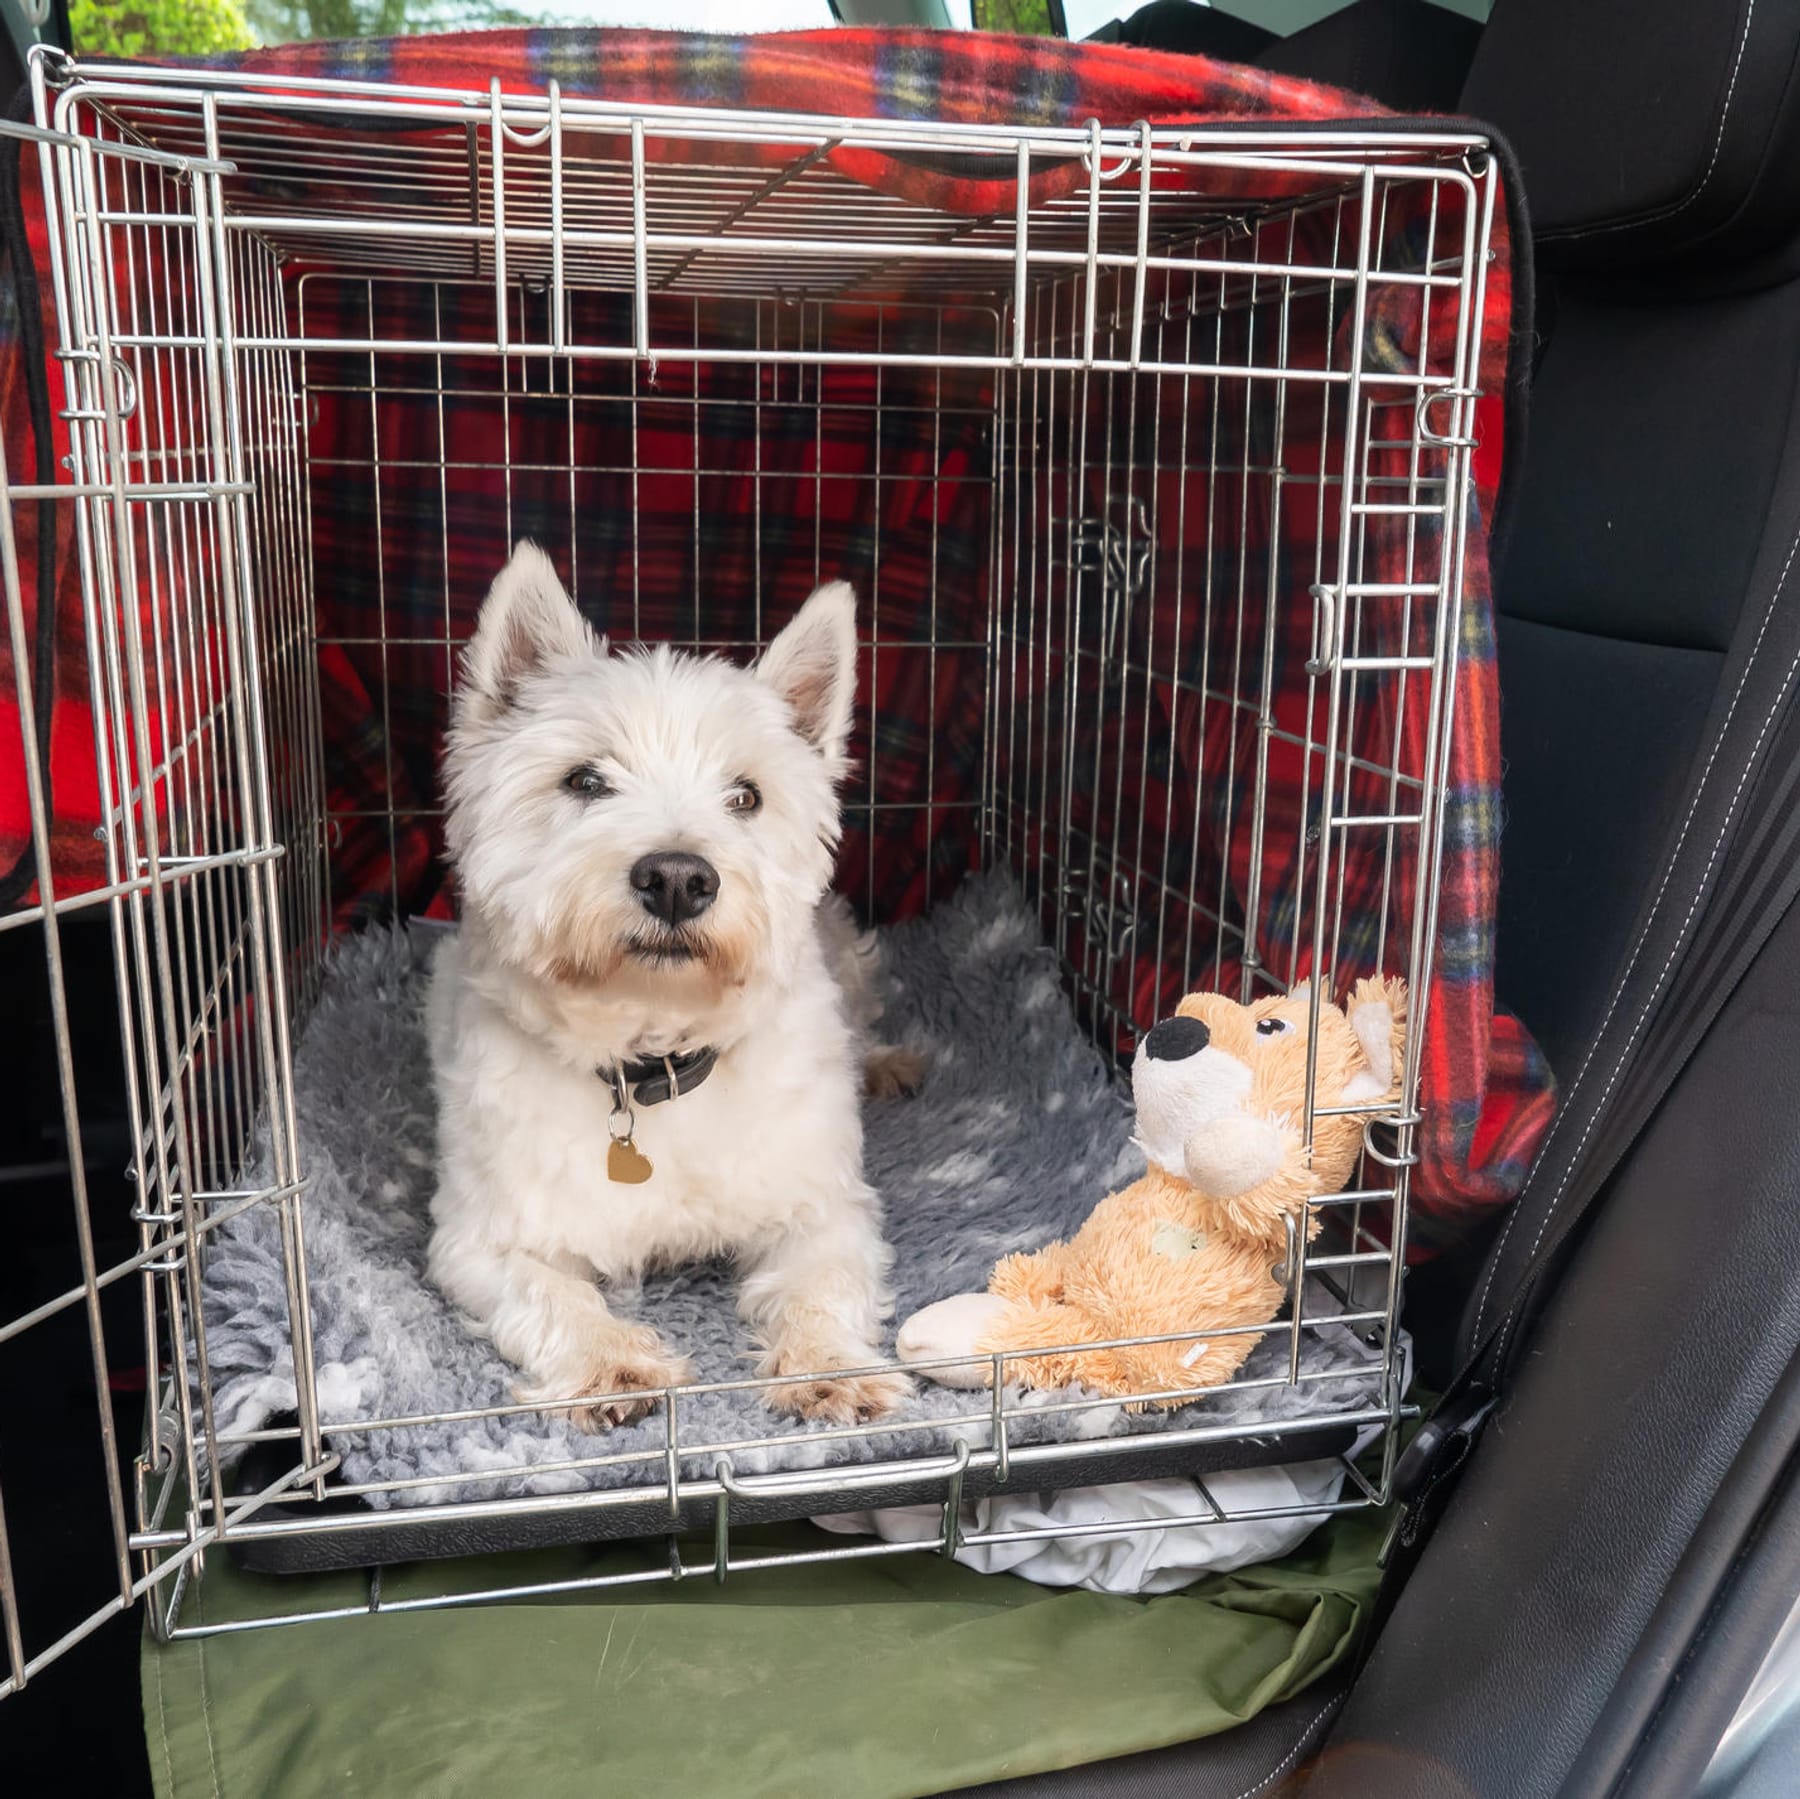 Ihren Hund im Auto transportieren: Richtig und sicher